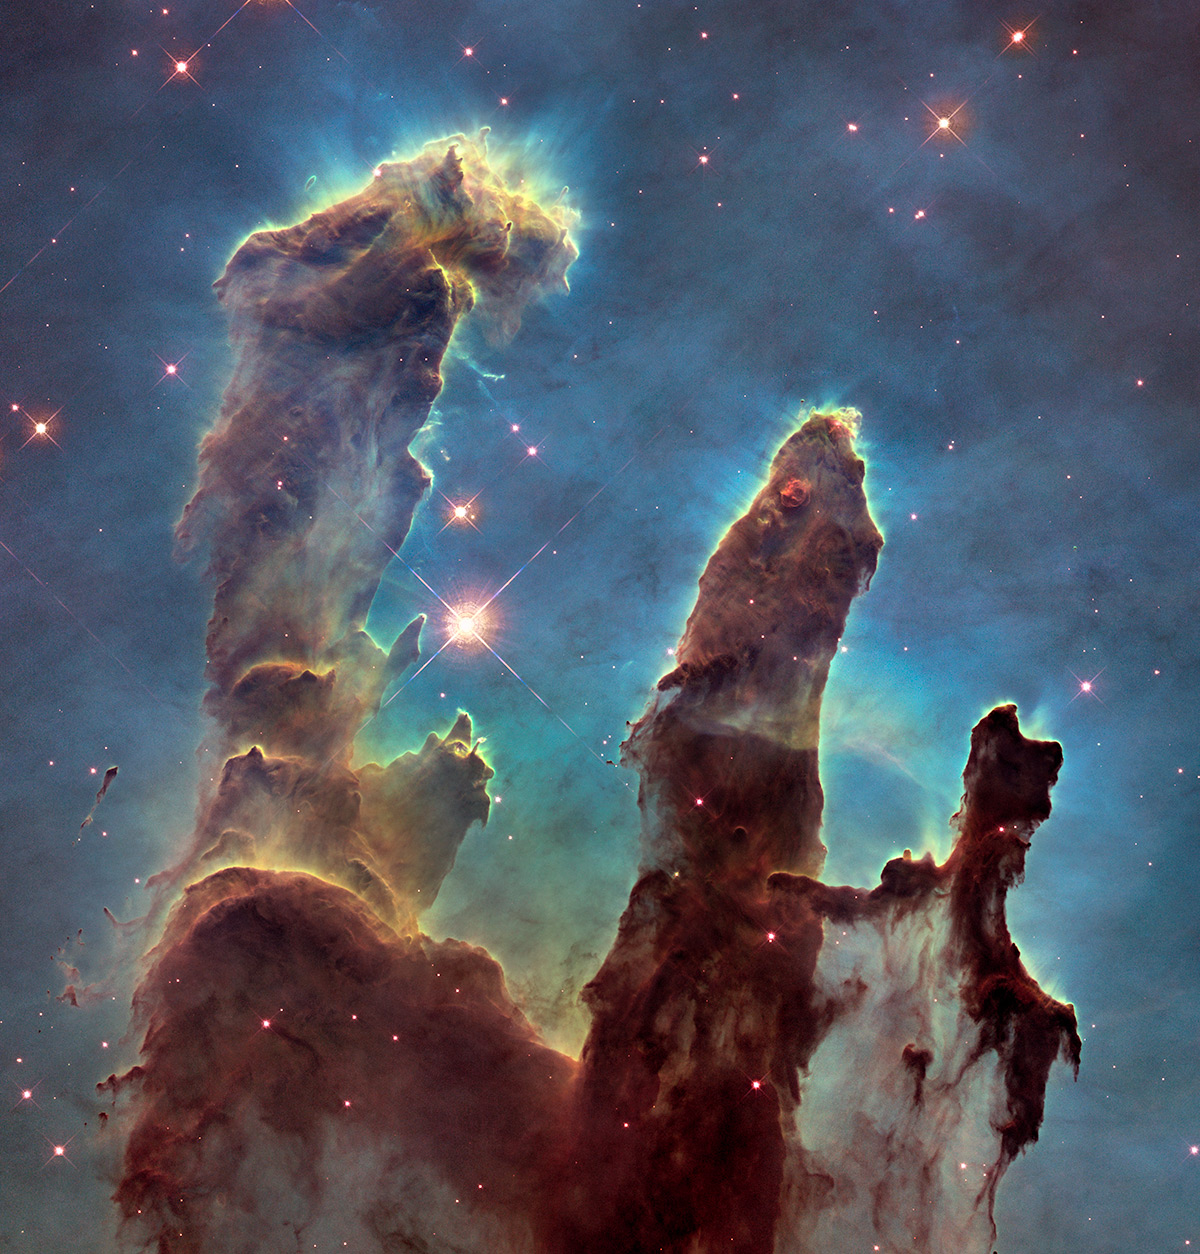 «Столпы творения» - новое культовое фото в высоком разрешении от НАСА 2